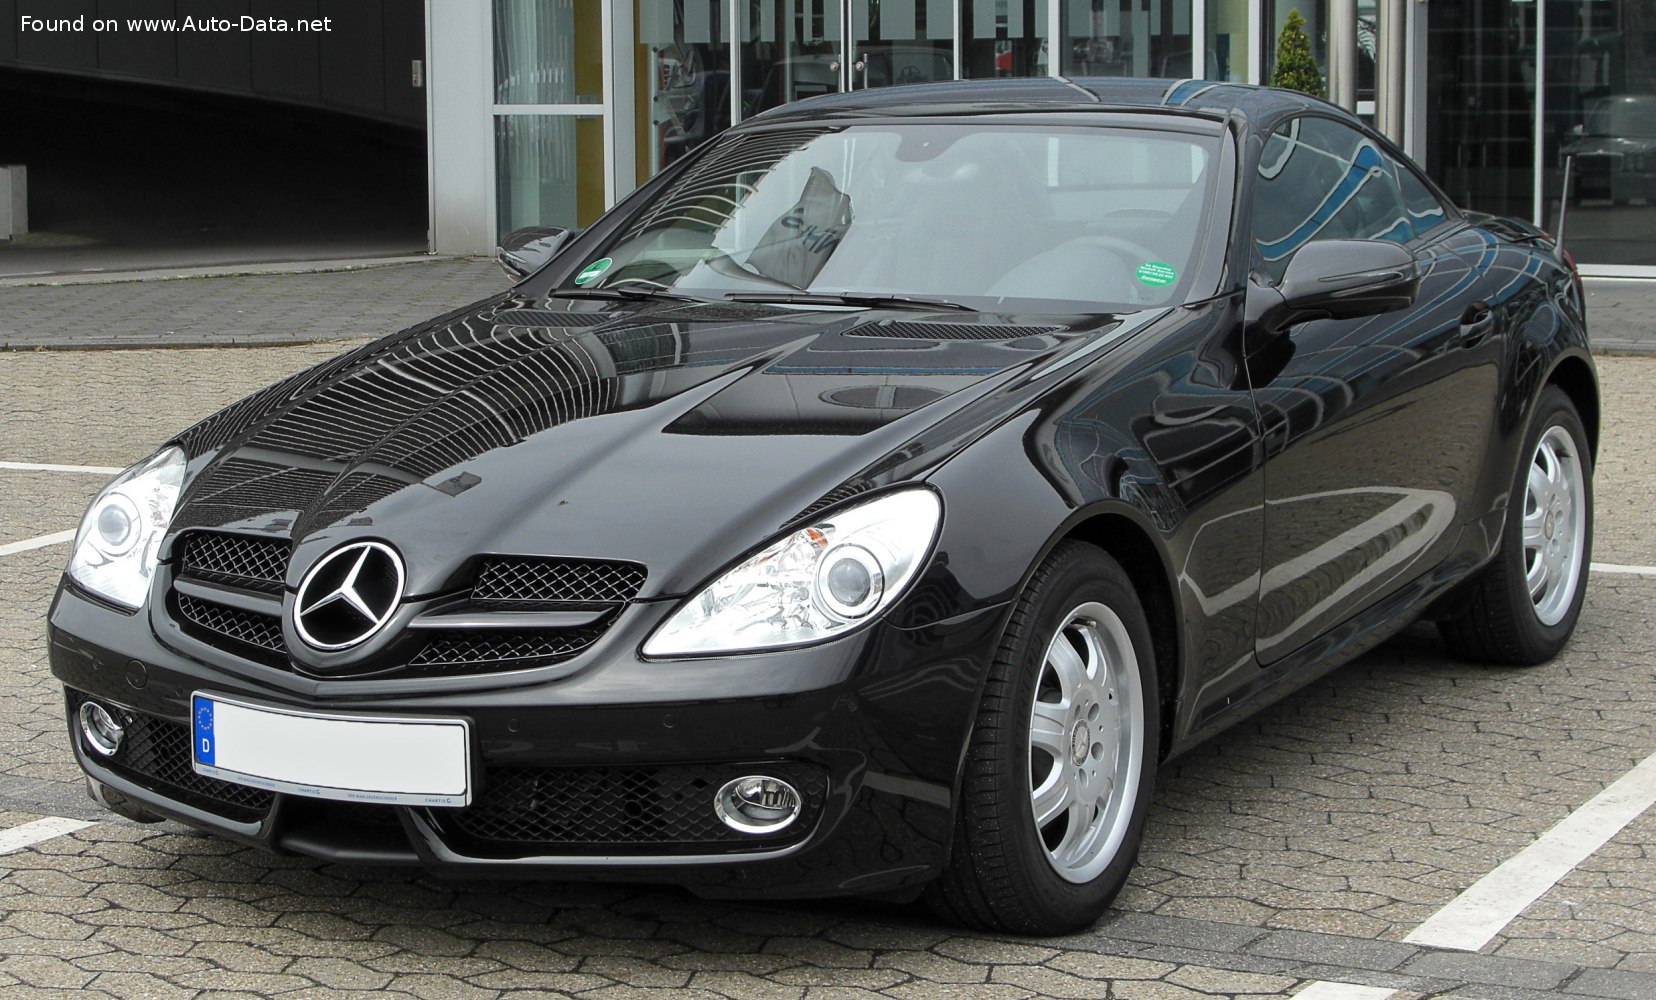 https://www.auto-data.net/images/f38/Mercedes-Benz-SLK-R171-facelift-2008.jpg